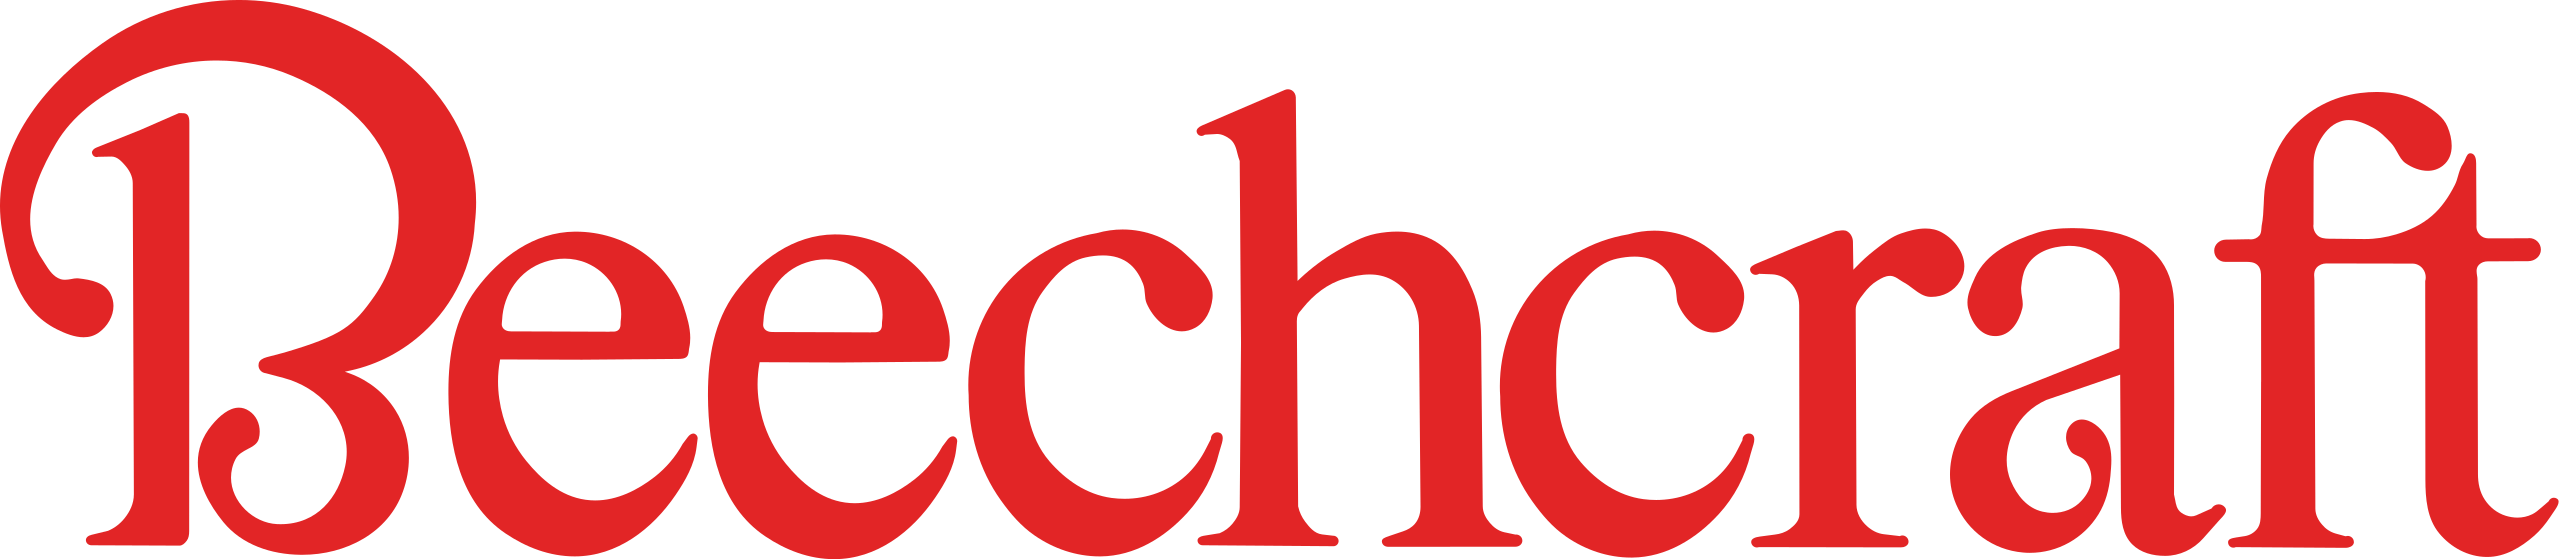 Beechcraft_logo.svg